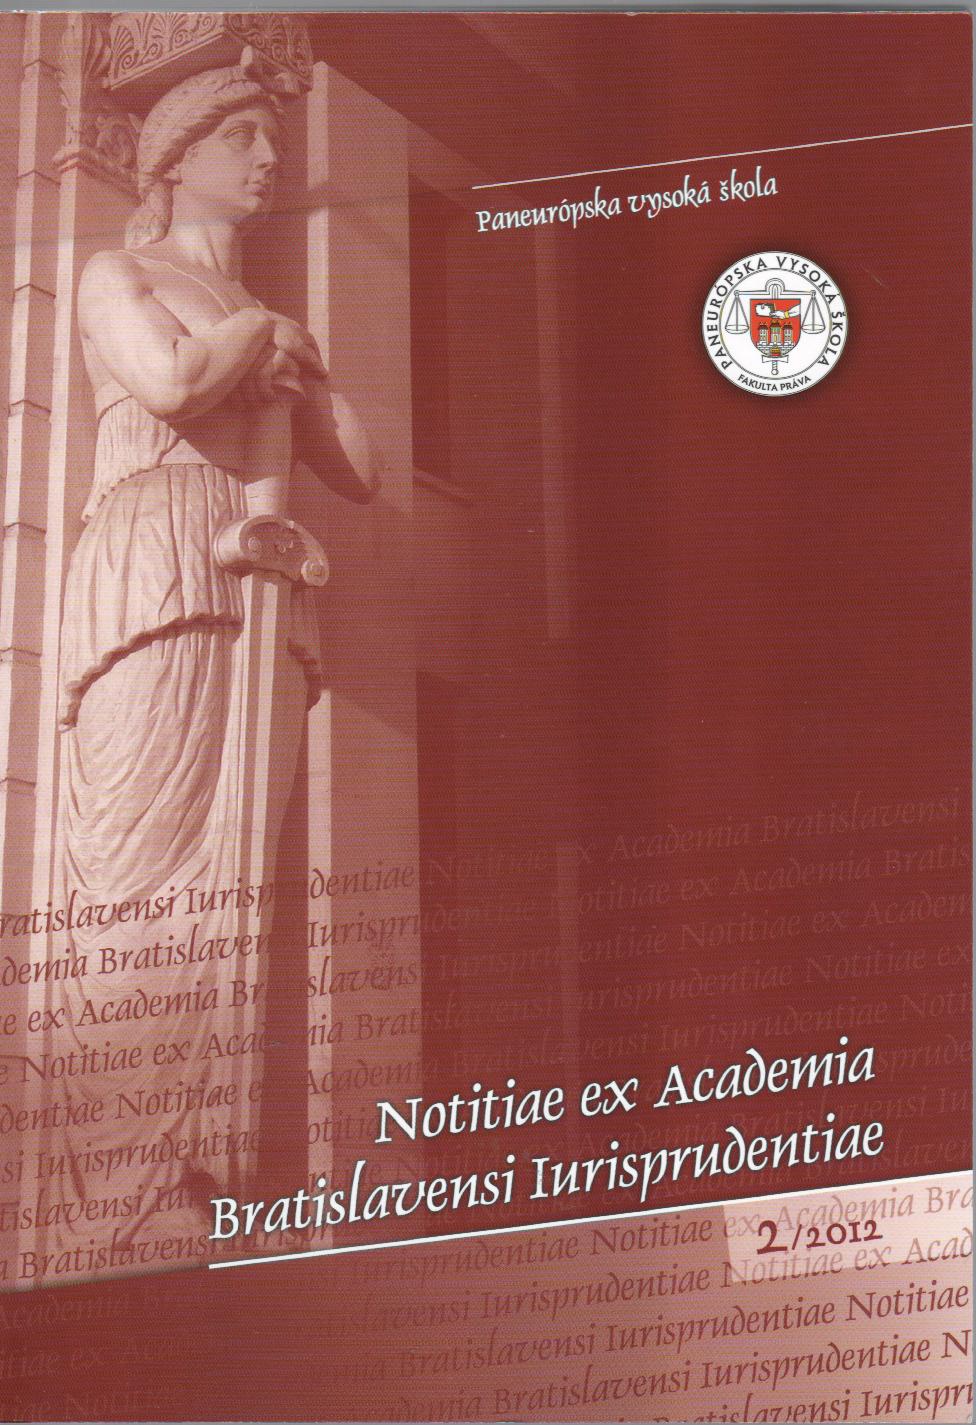 Notitiae ex Academia Bratislavensi Iurisprudentiae 2/2012